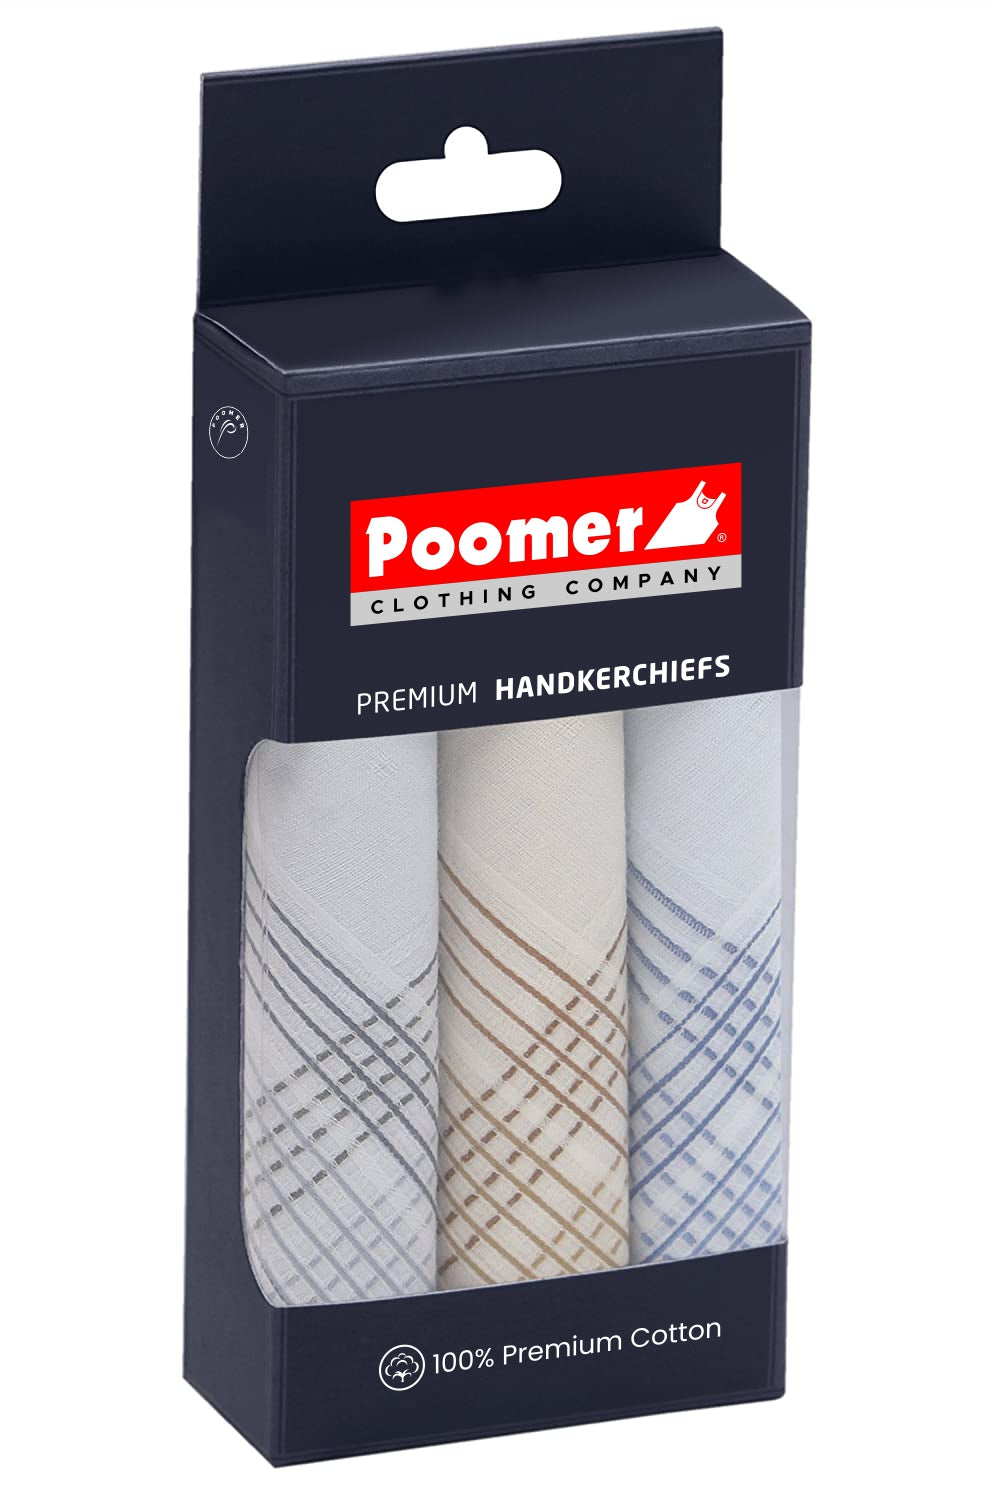 Poomer on X: Poomer Premium Legging, Buy Now at:  # Poomer #PoomerLegging  / X